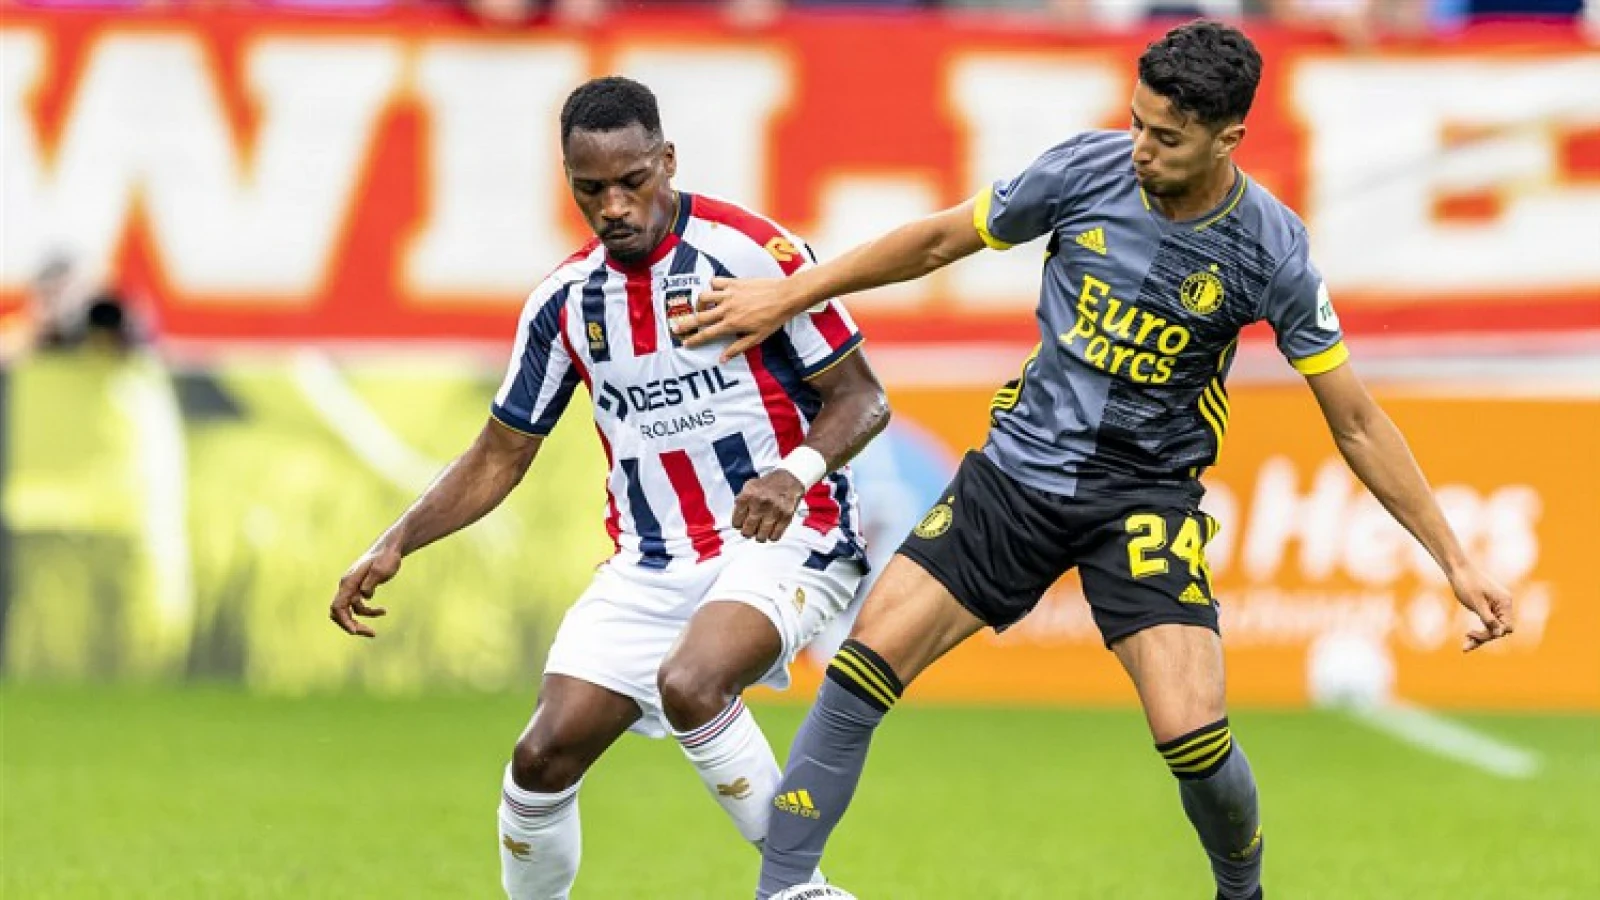 OFFICIEEL | Feyenoord verlengt contract Naoufal Bannis met één jaar